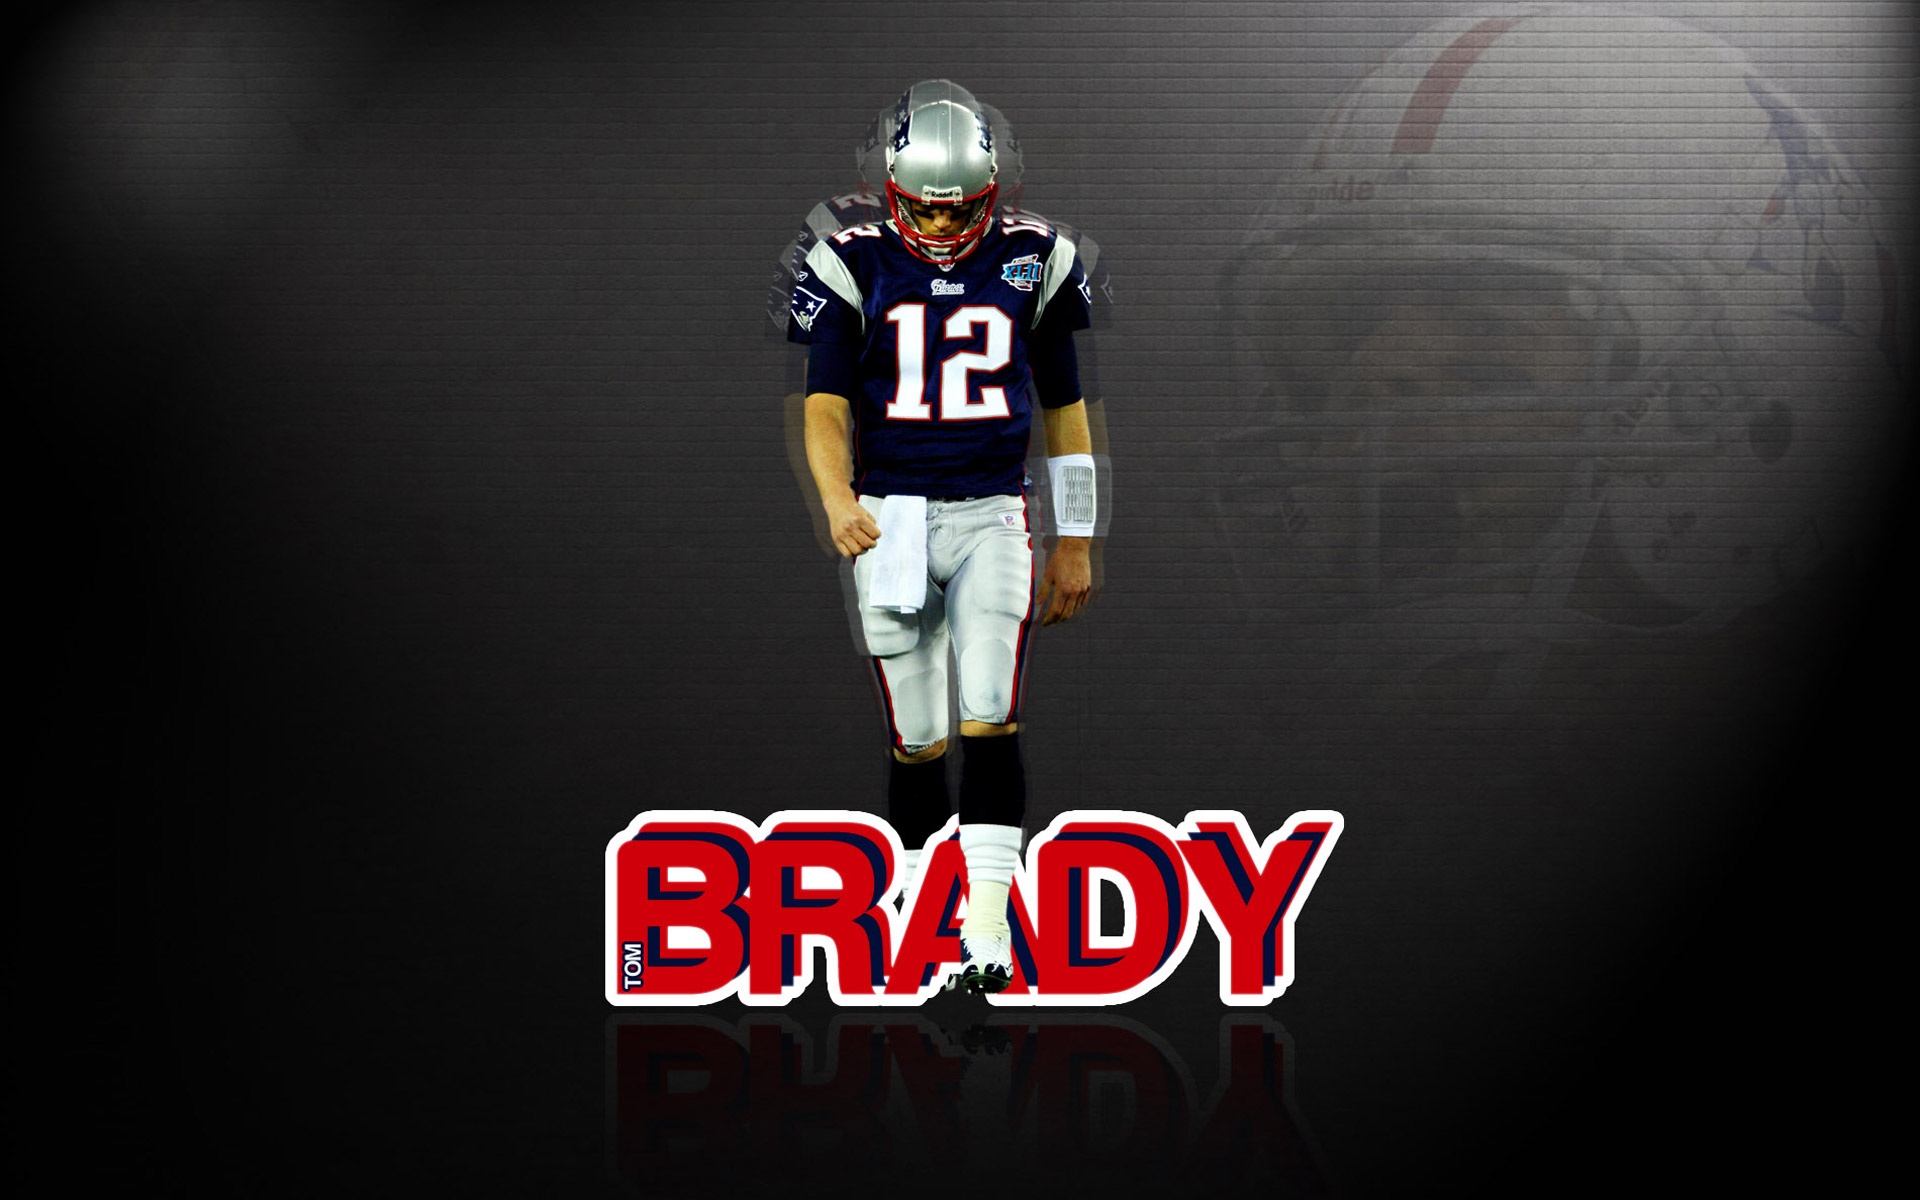 Tom Brady 2015 New England Patriots